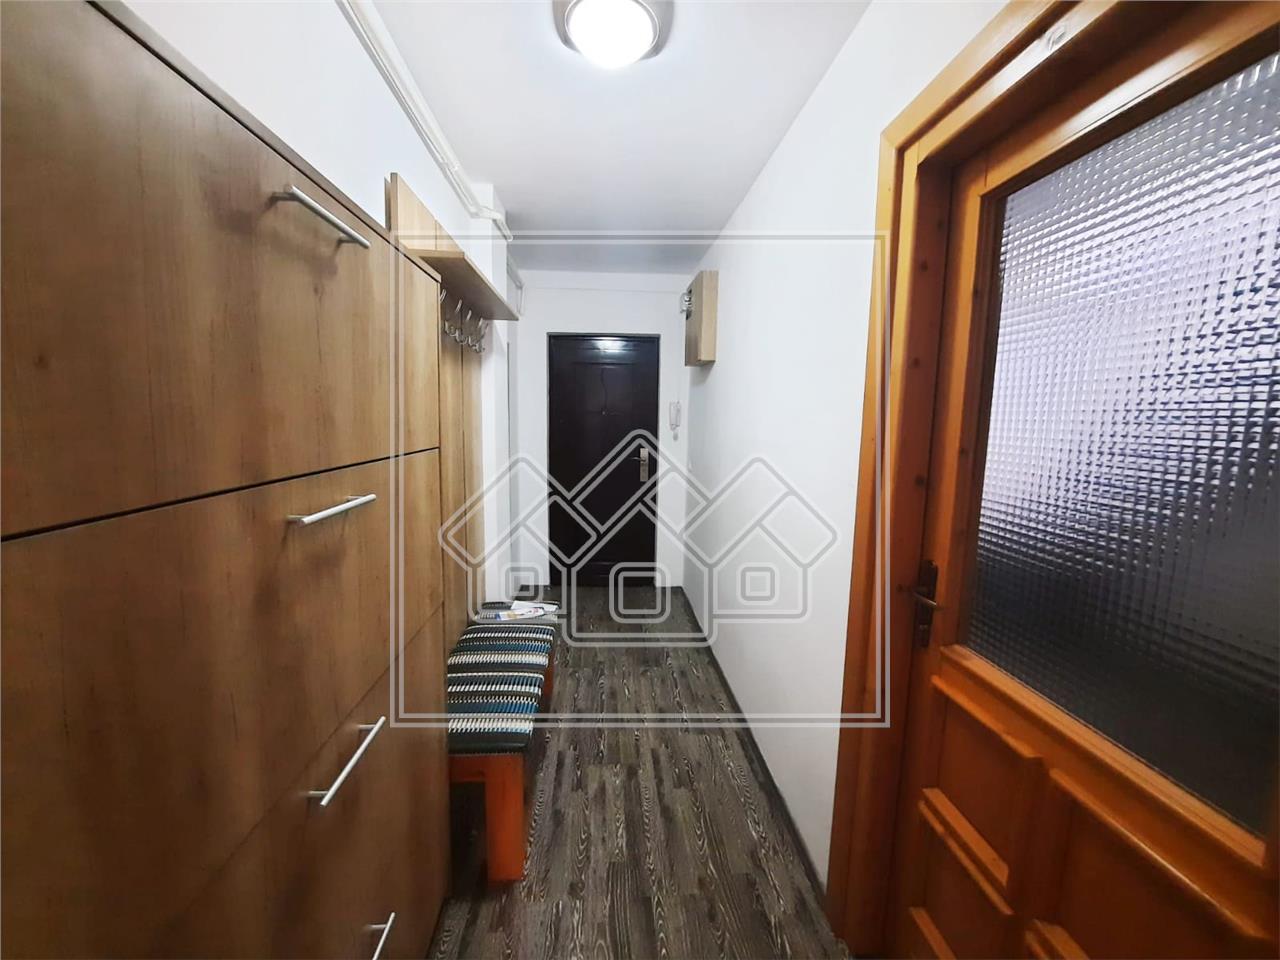 Dachboden zum Verkauf in Sibiu - 3 Zimmer - 2 B?der - Strand II Bereic